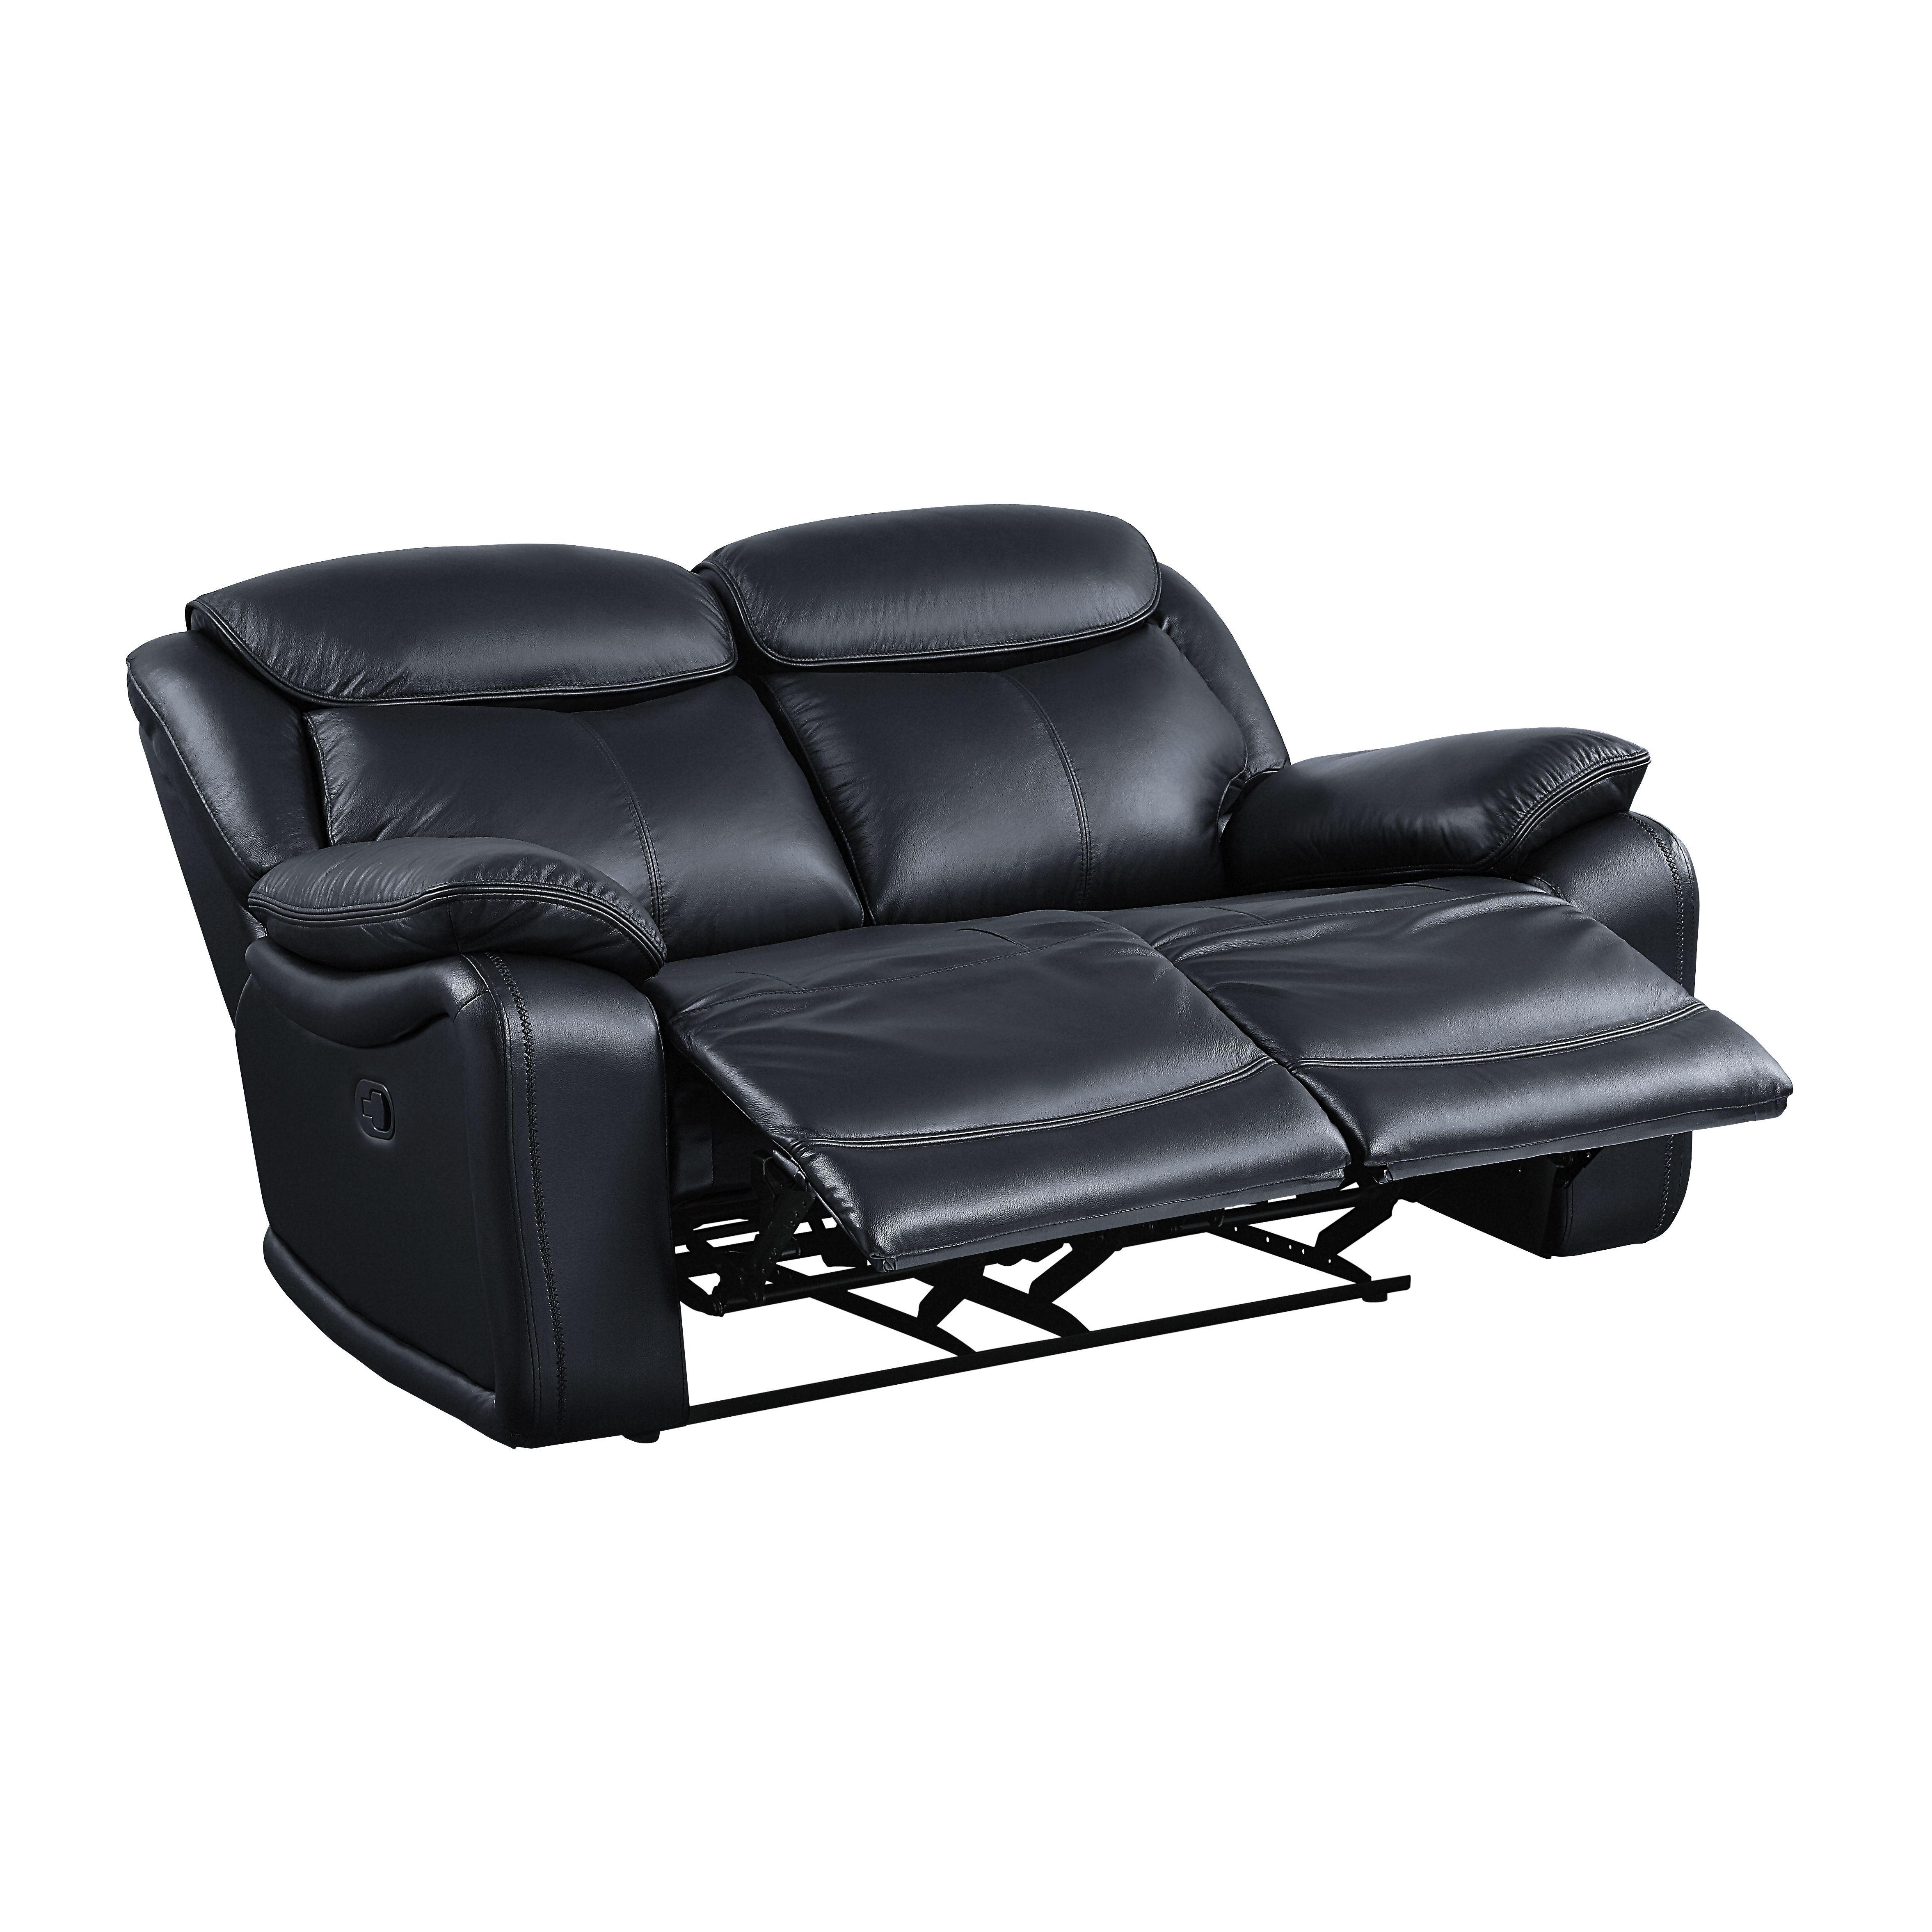 

    
Acme Furniture Ralorel Sofa and Loveseat Set Black LV00060-2pcs
